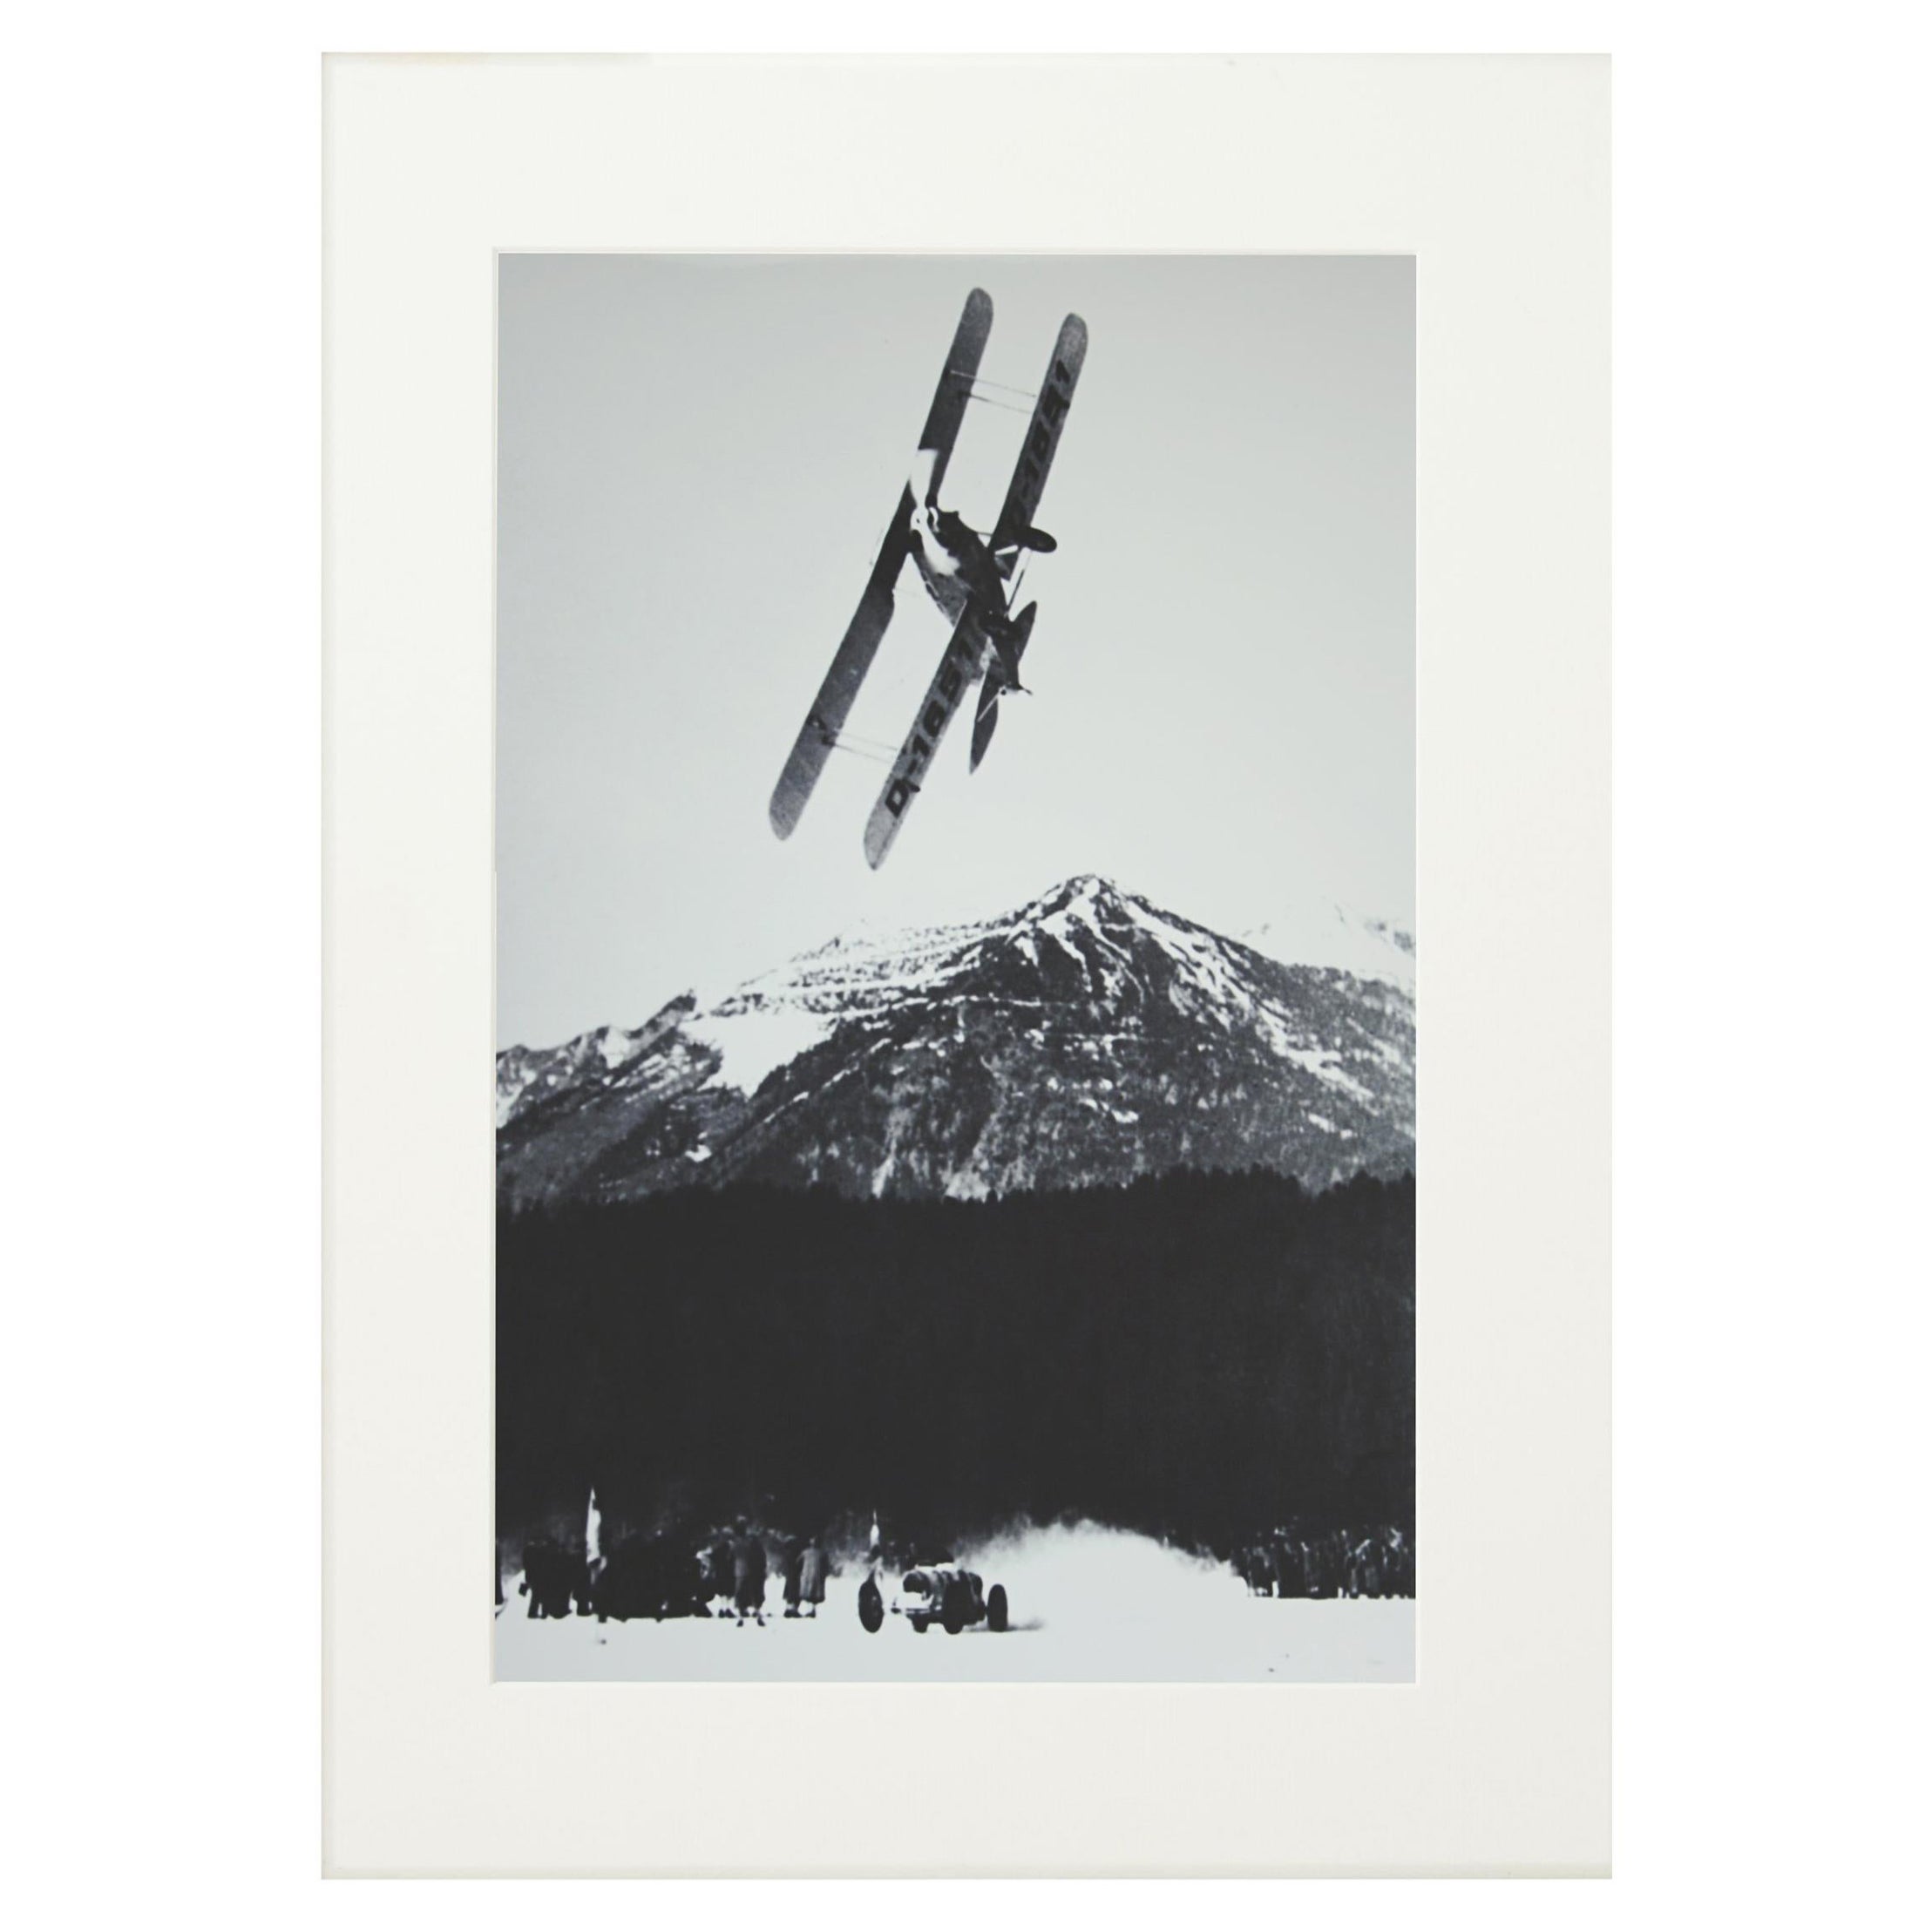 Photographie de ski alpin, « La course » tirée d'une photographie originale des années 1930